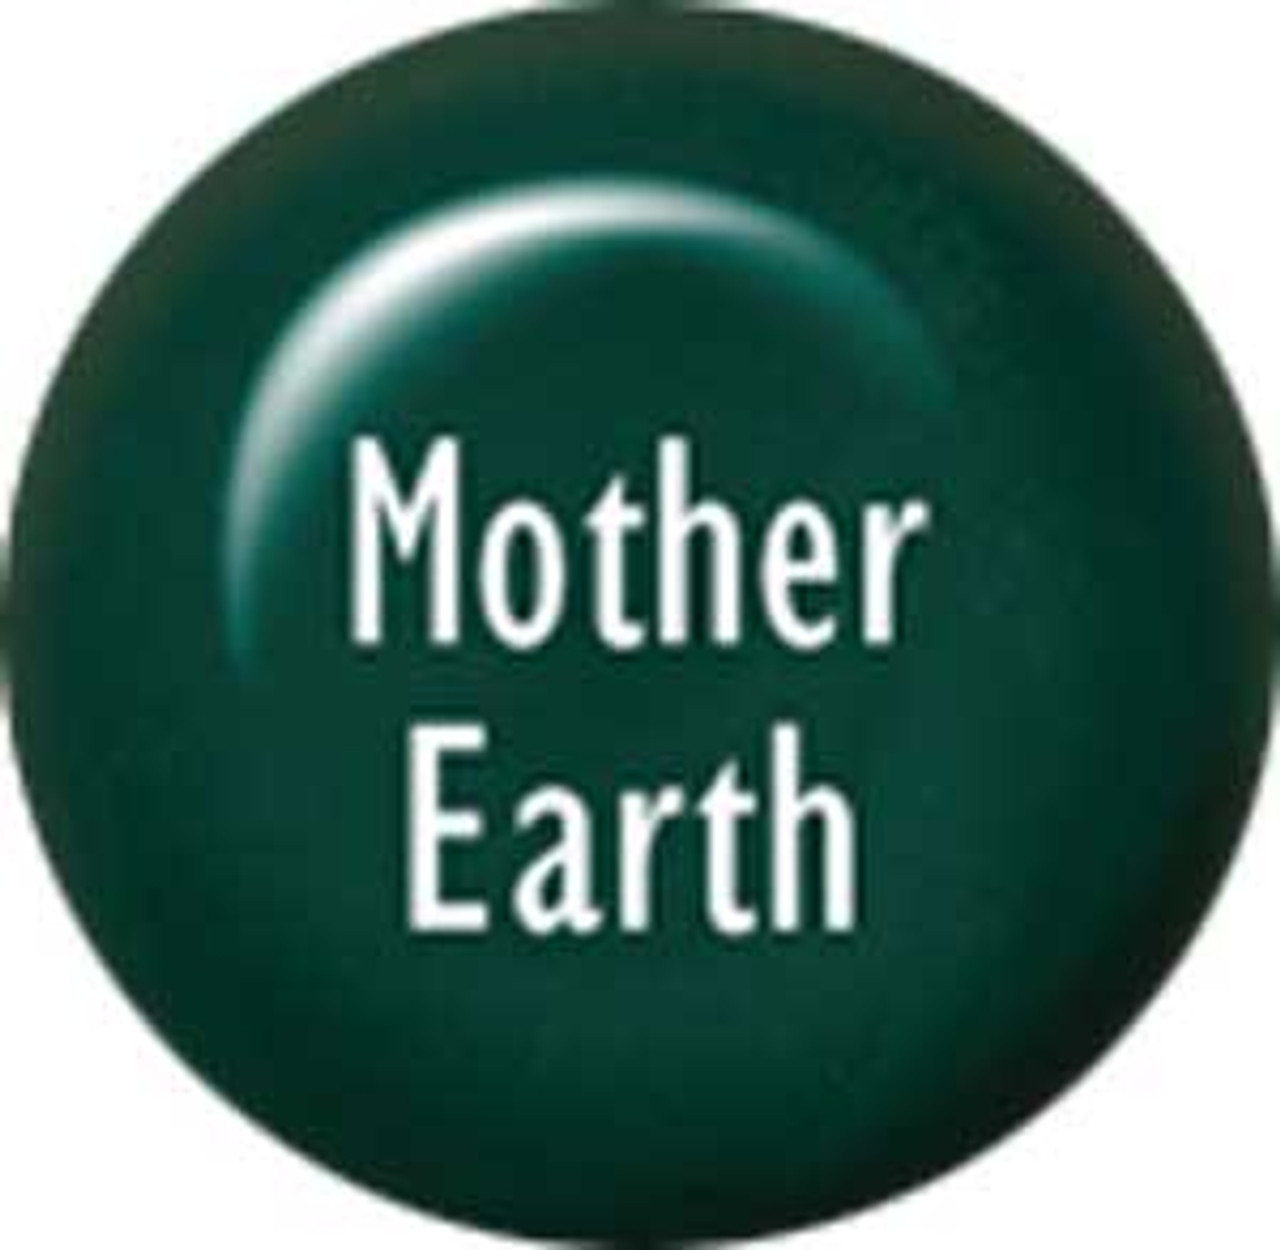 ibd Gel Polish Mother Earth - .25oz/7g